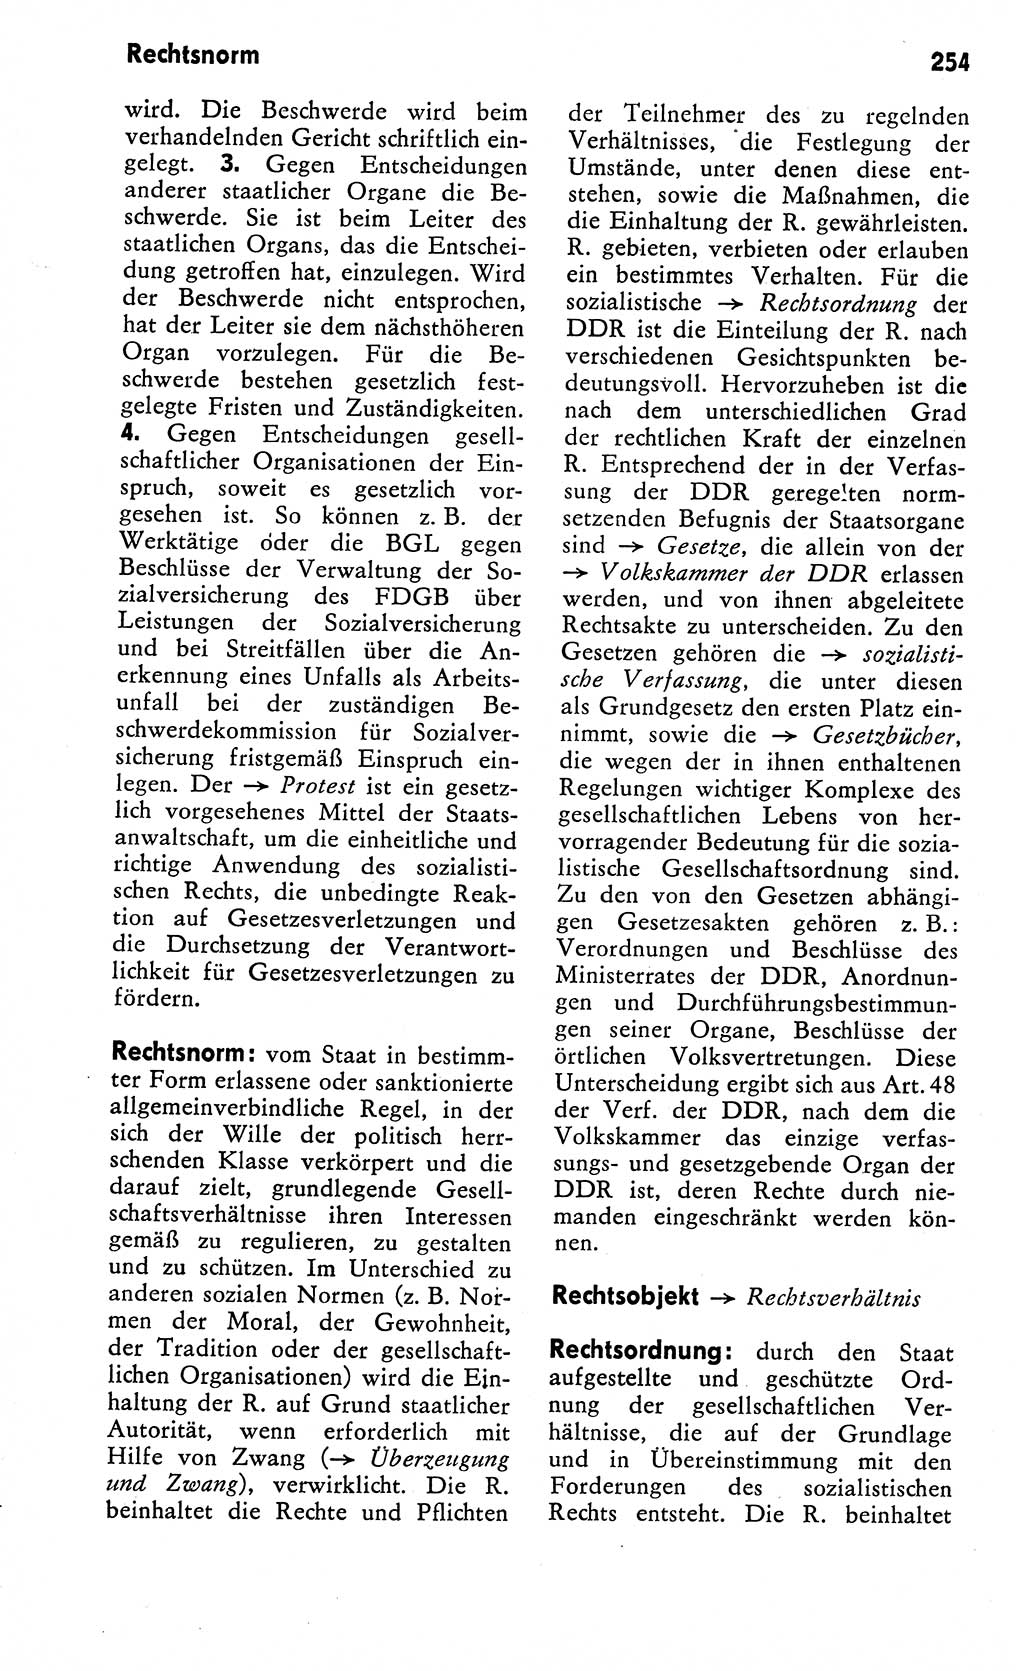 Wörterbuch zum sozialistischen Staat [Deutsche Demokratische Republik (DDR)] 1974, Seite 254 (Wb. soz. St. DDR 1974, S. 254)